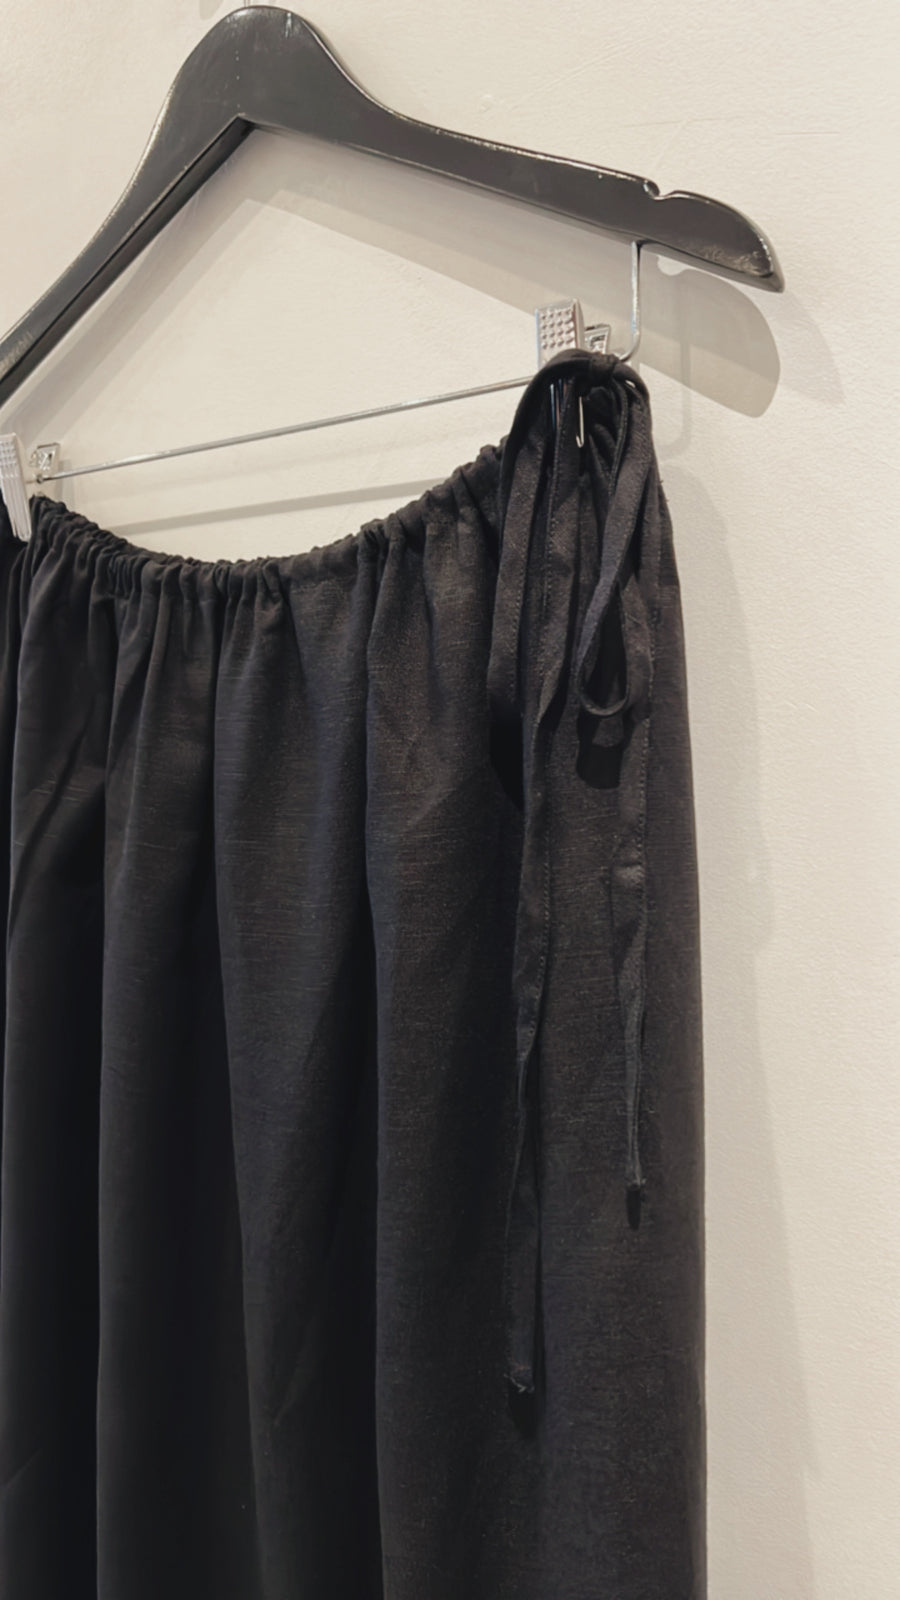 Linen Skirt in Black